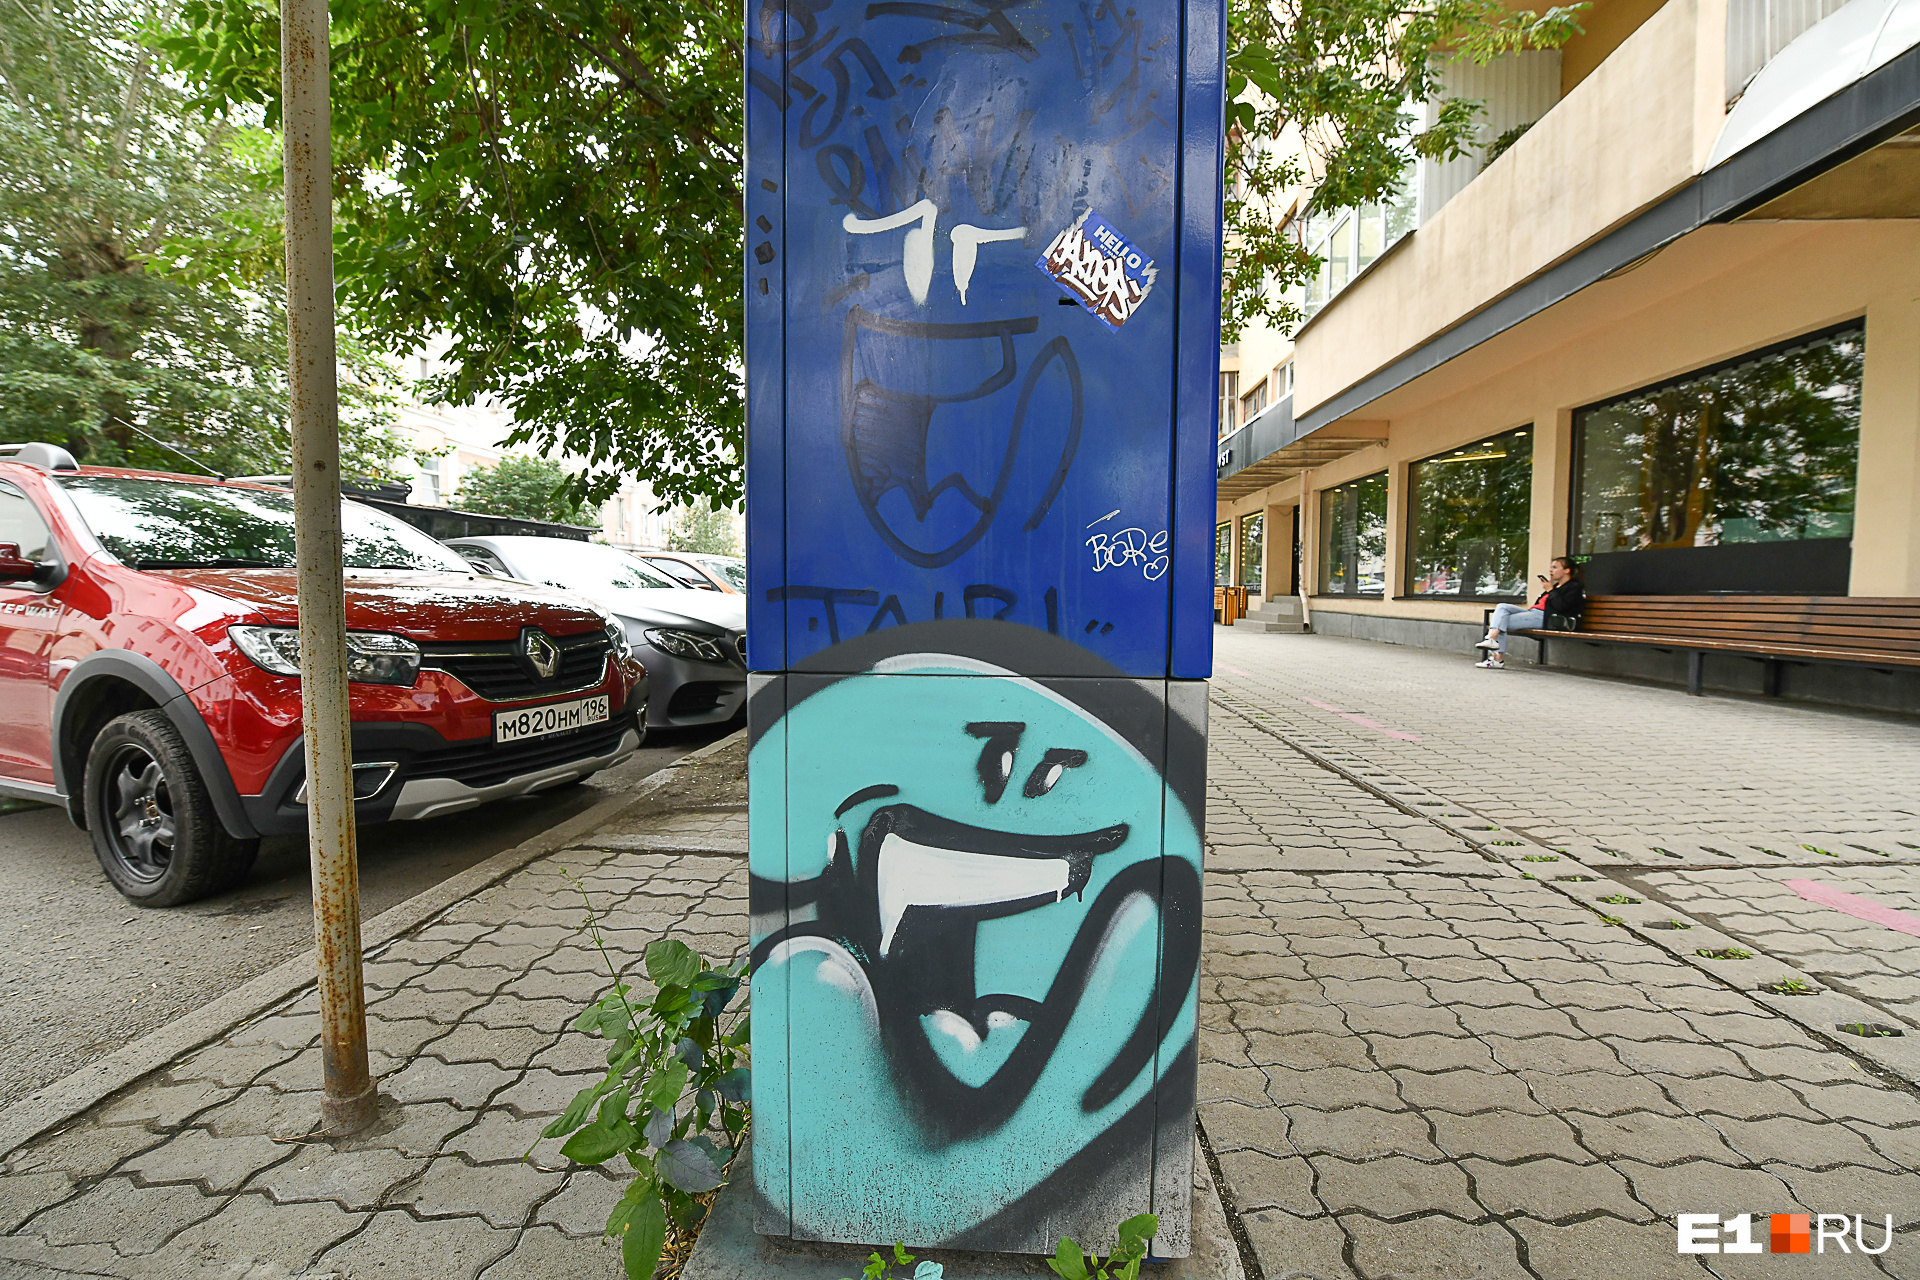 Уличные художники решили использовать паркоматы как место для творчества